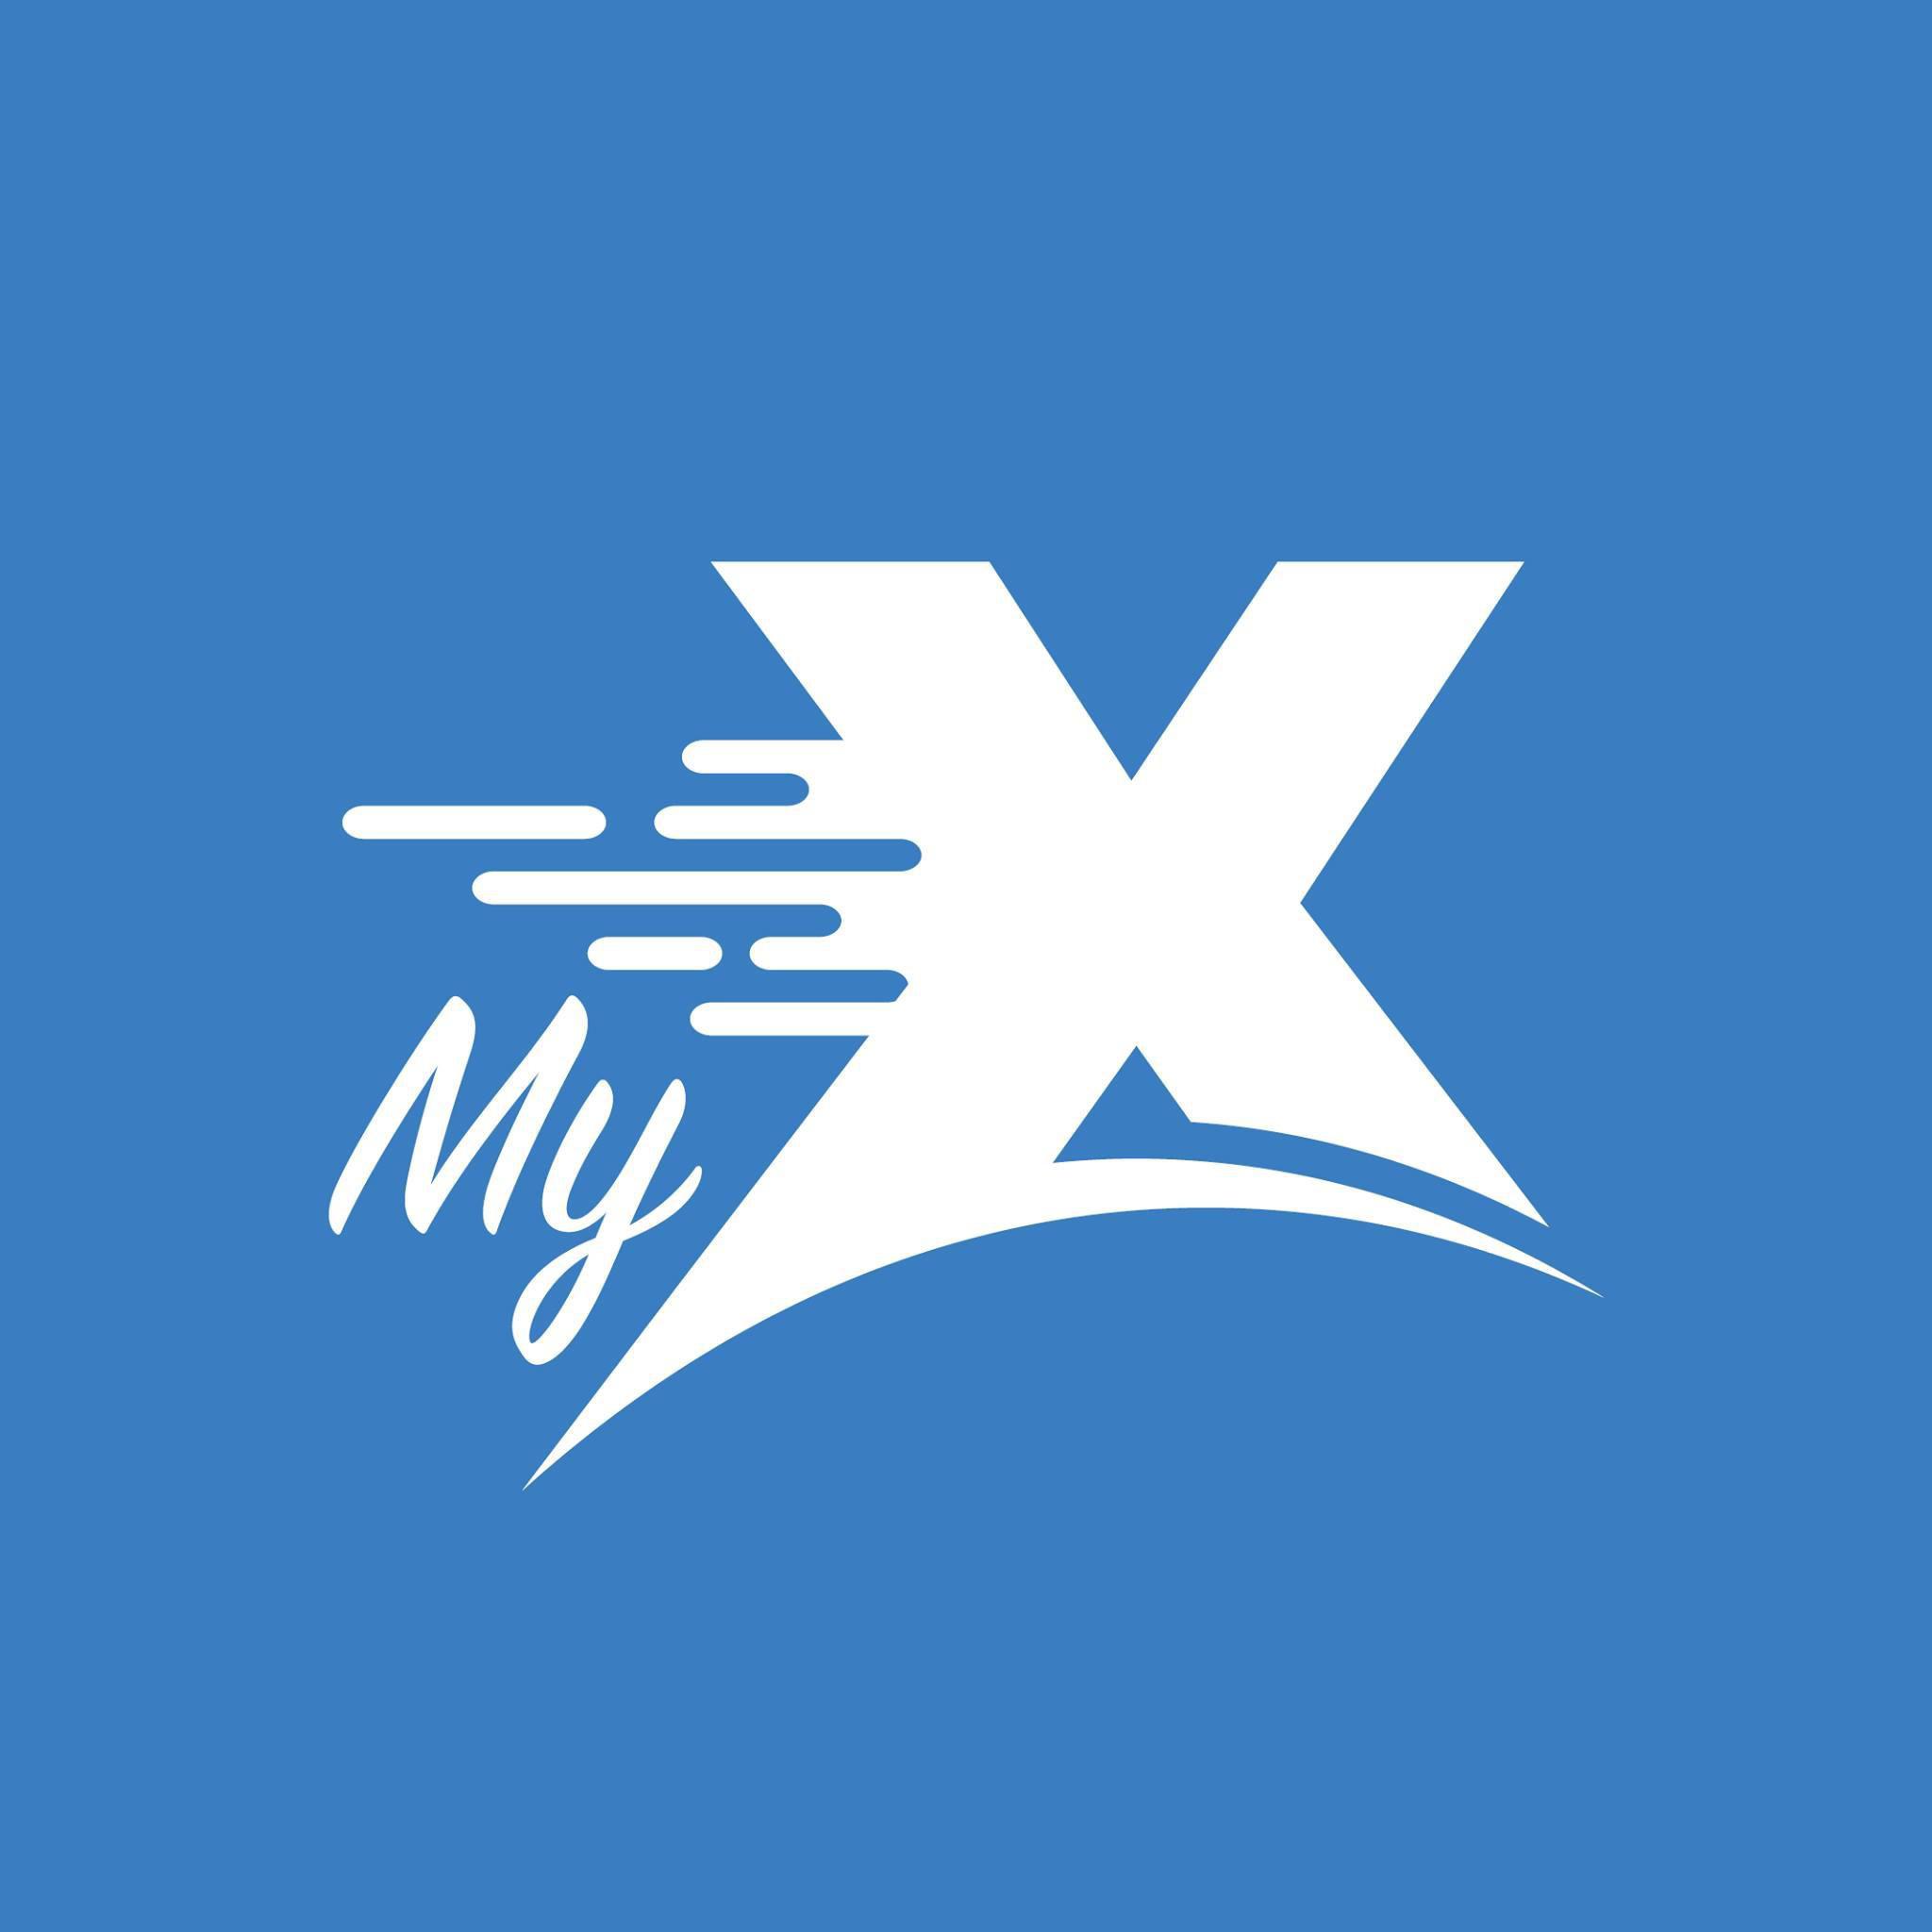 MyXline Oy Logo